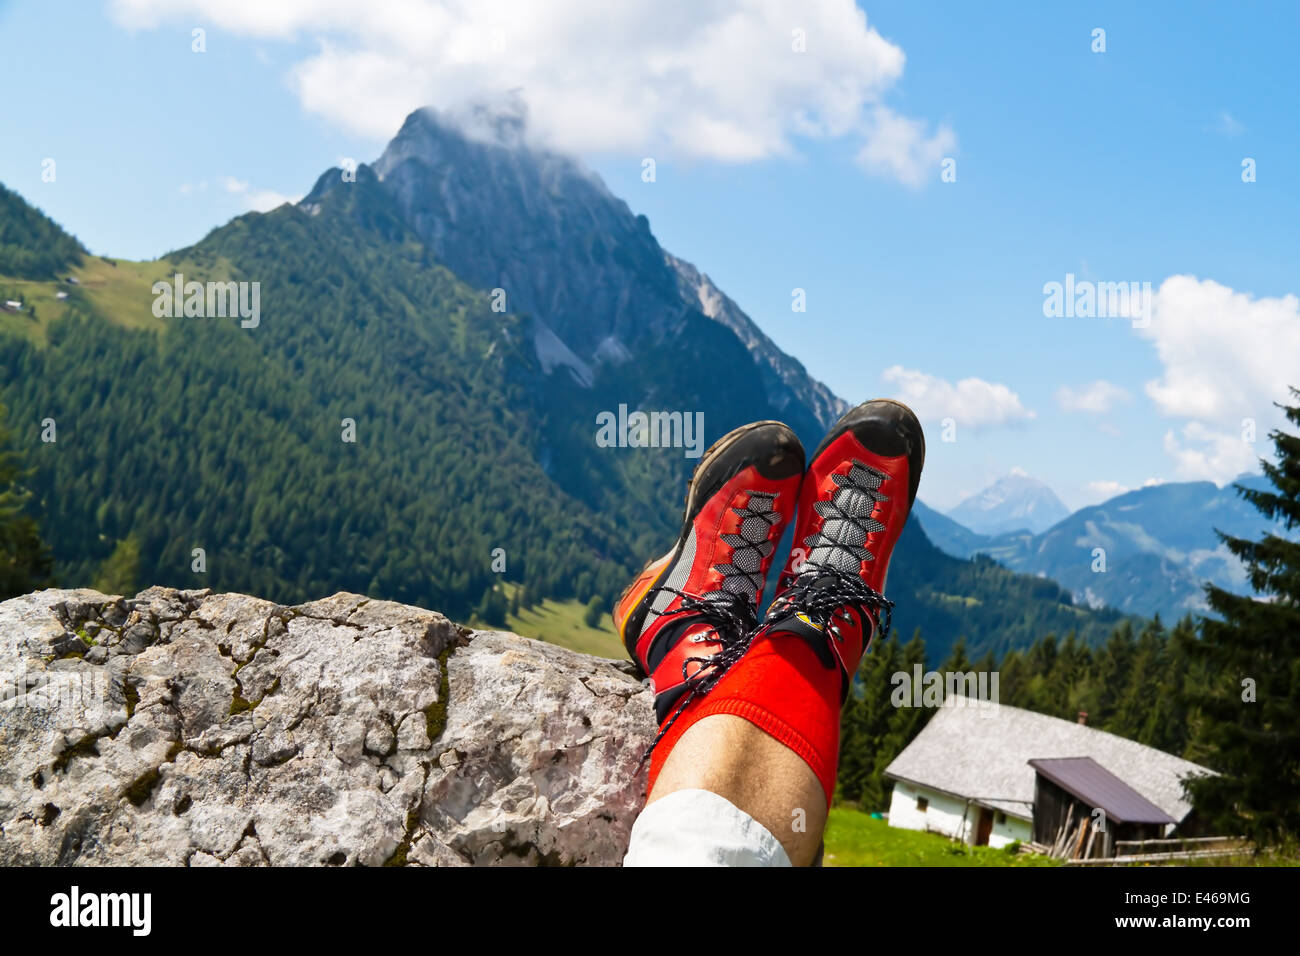 Bottes de randonnée rouge sur une randonnée dans les montagnes de l'Autriche. L'activité durant les loisirs Banque D'Images